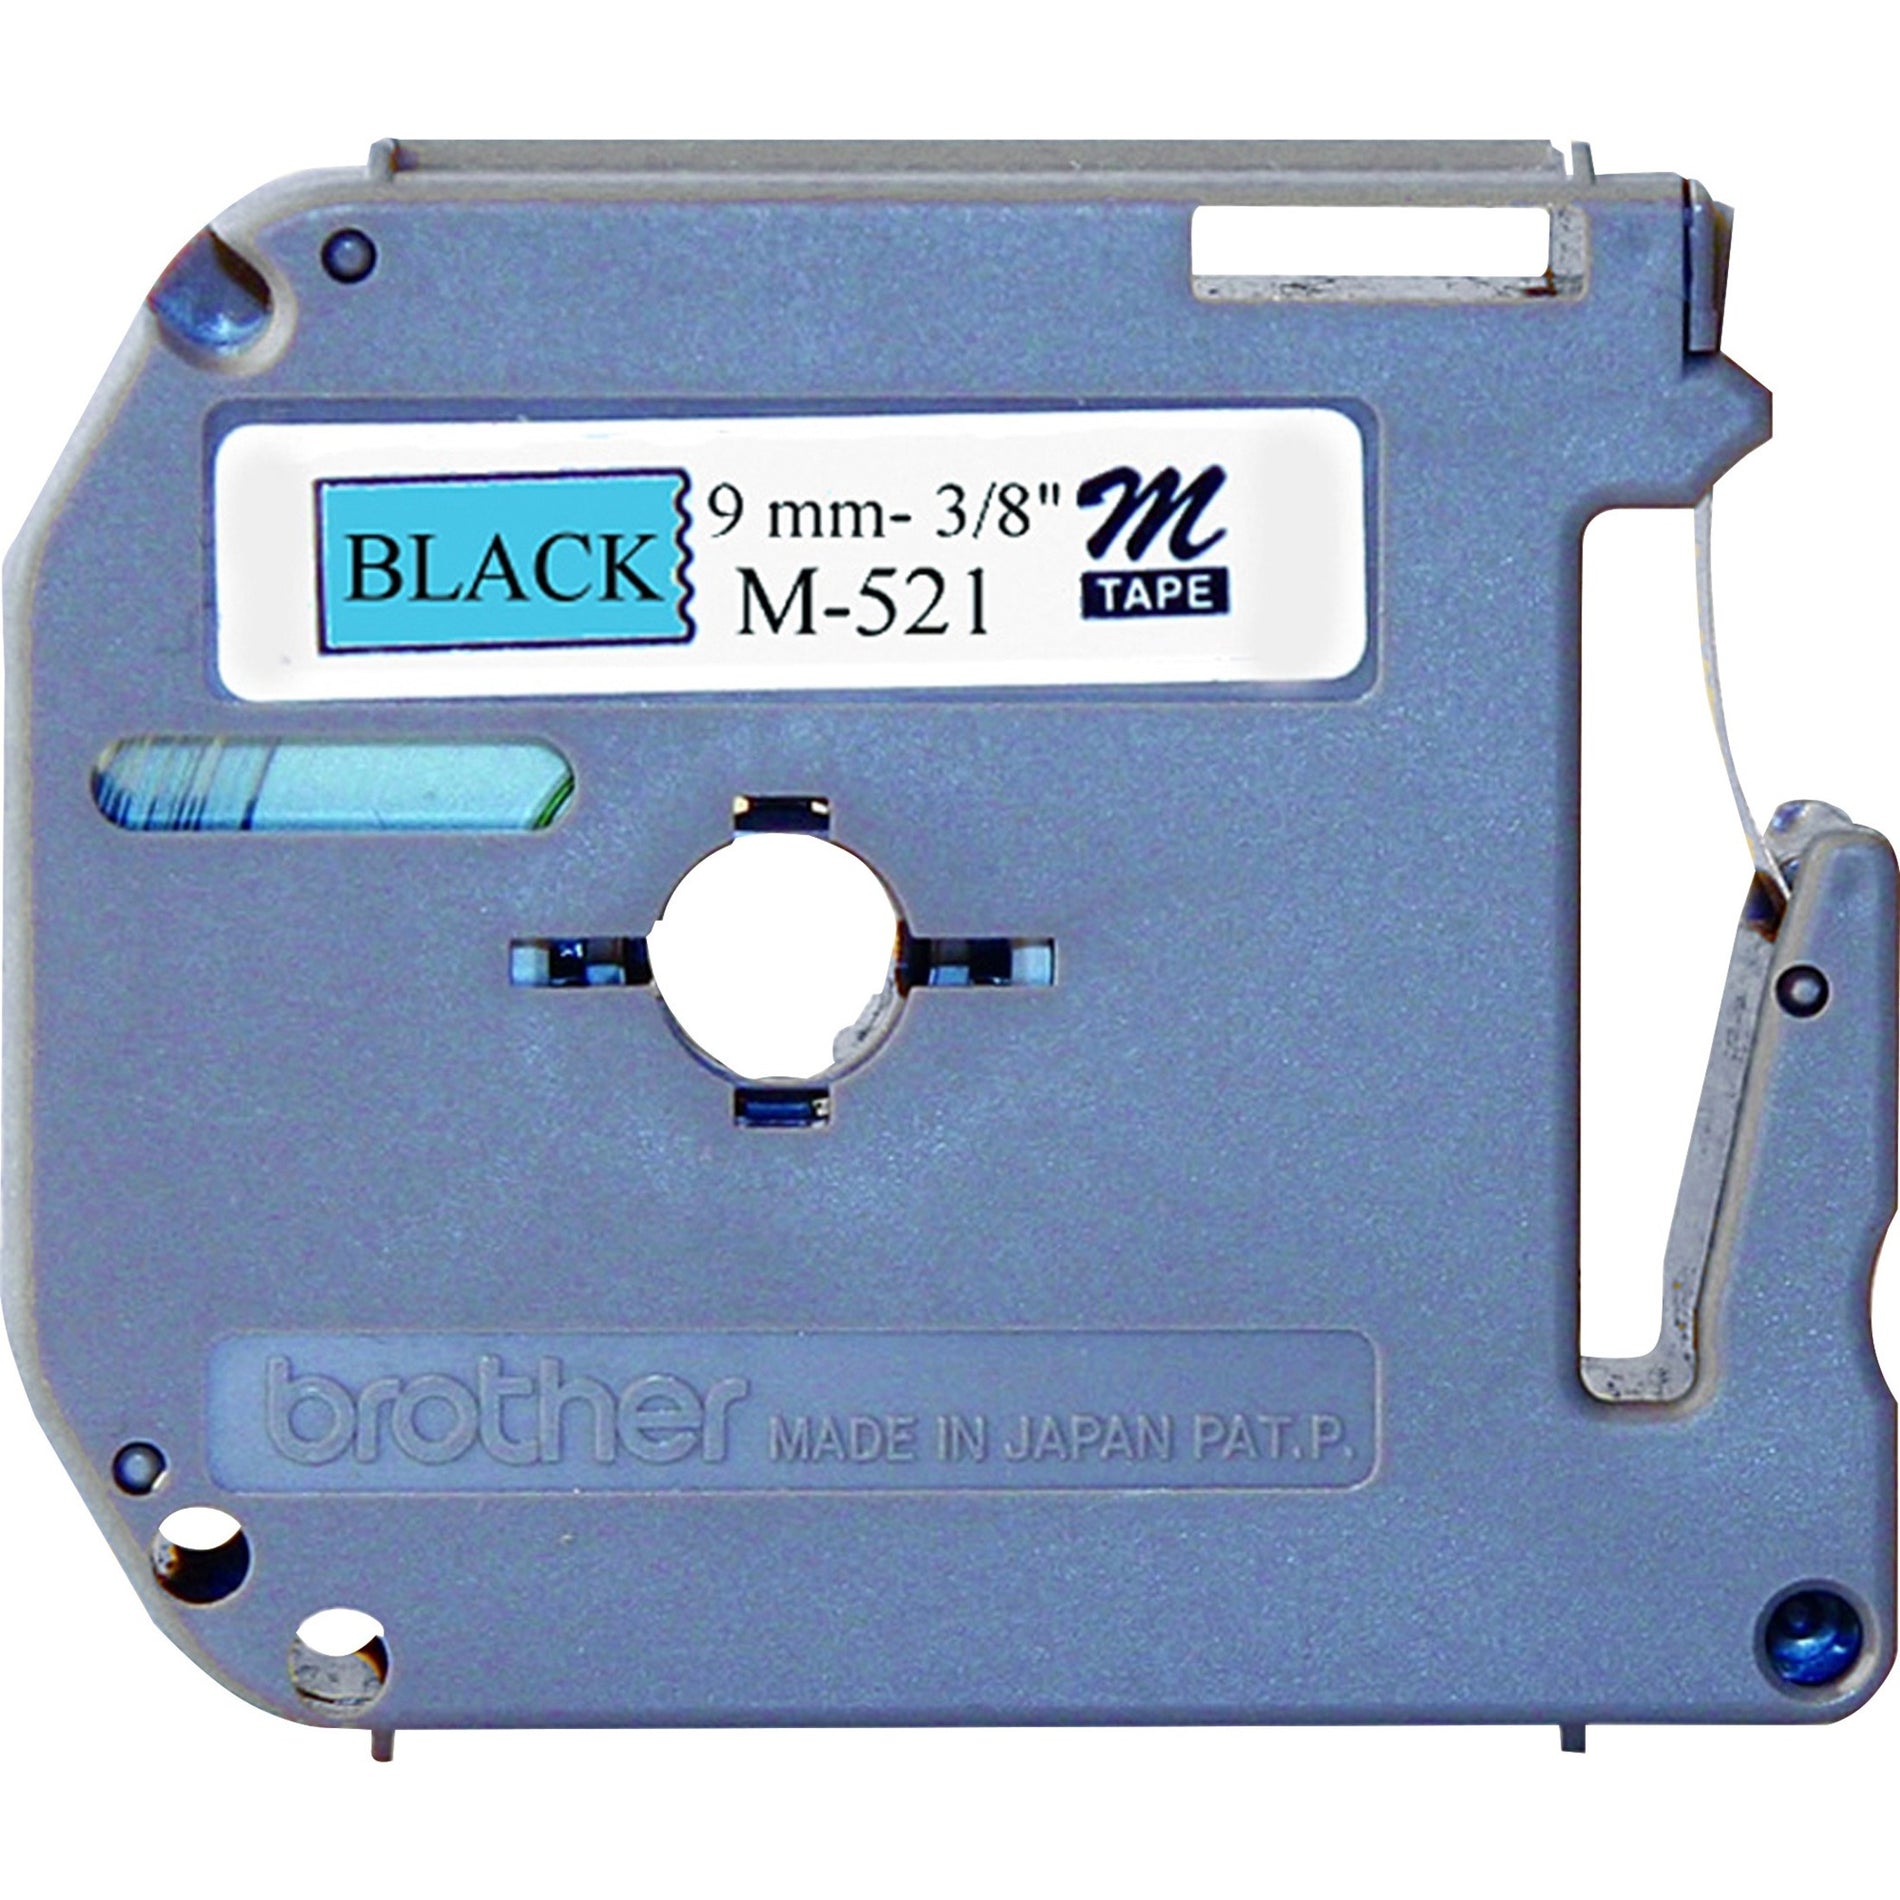 Broer M521 P-touch Niet-gelamineerd Label Tape 3/8" Grootte Zwart/Blauw